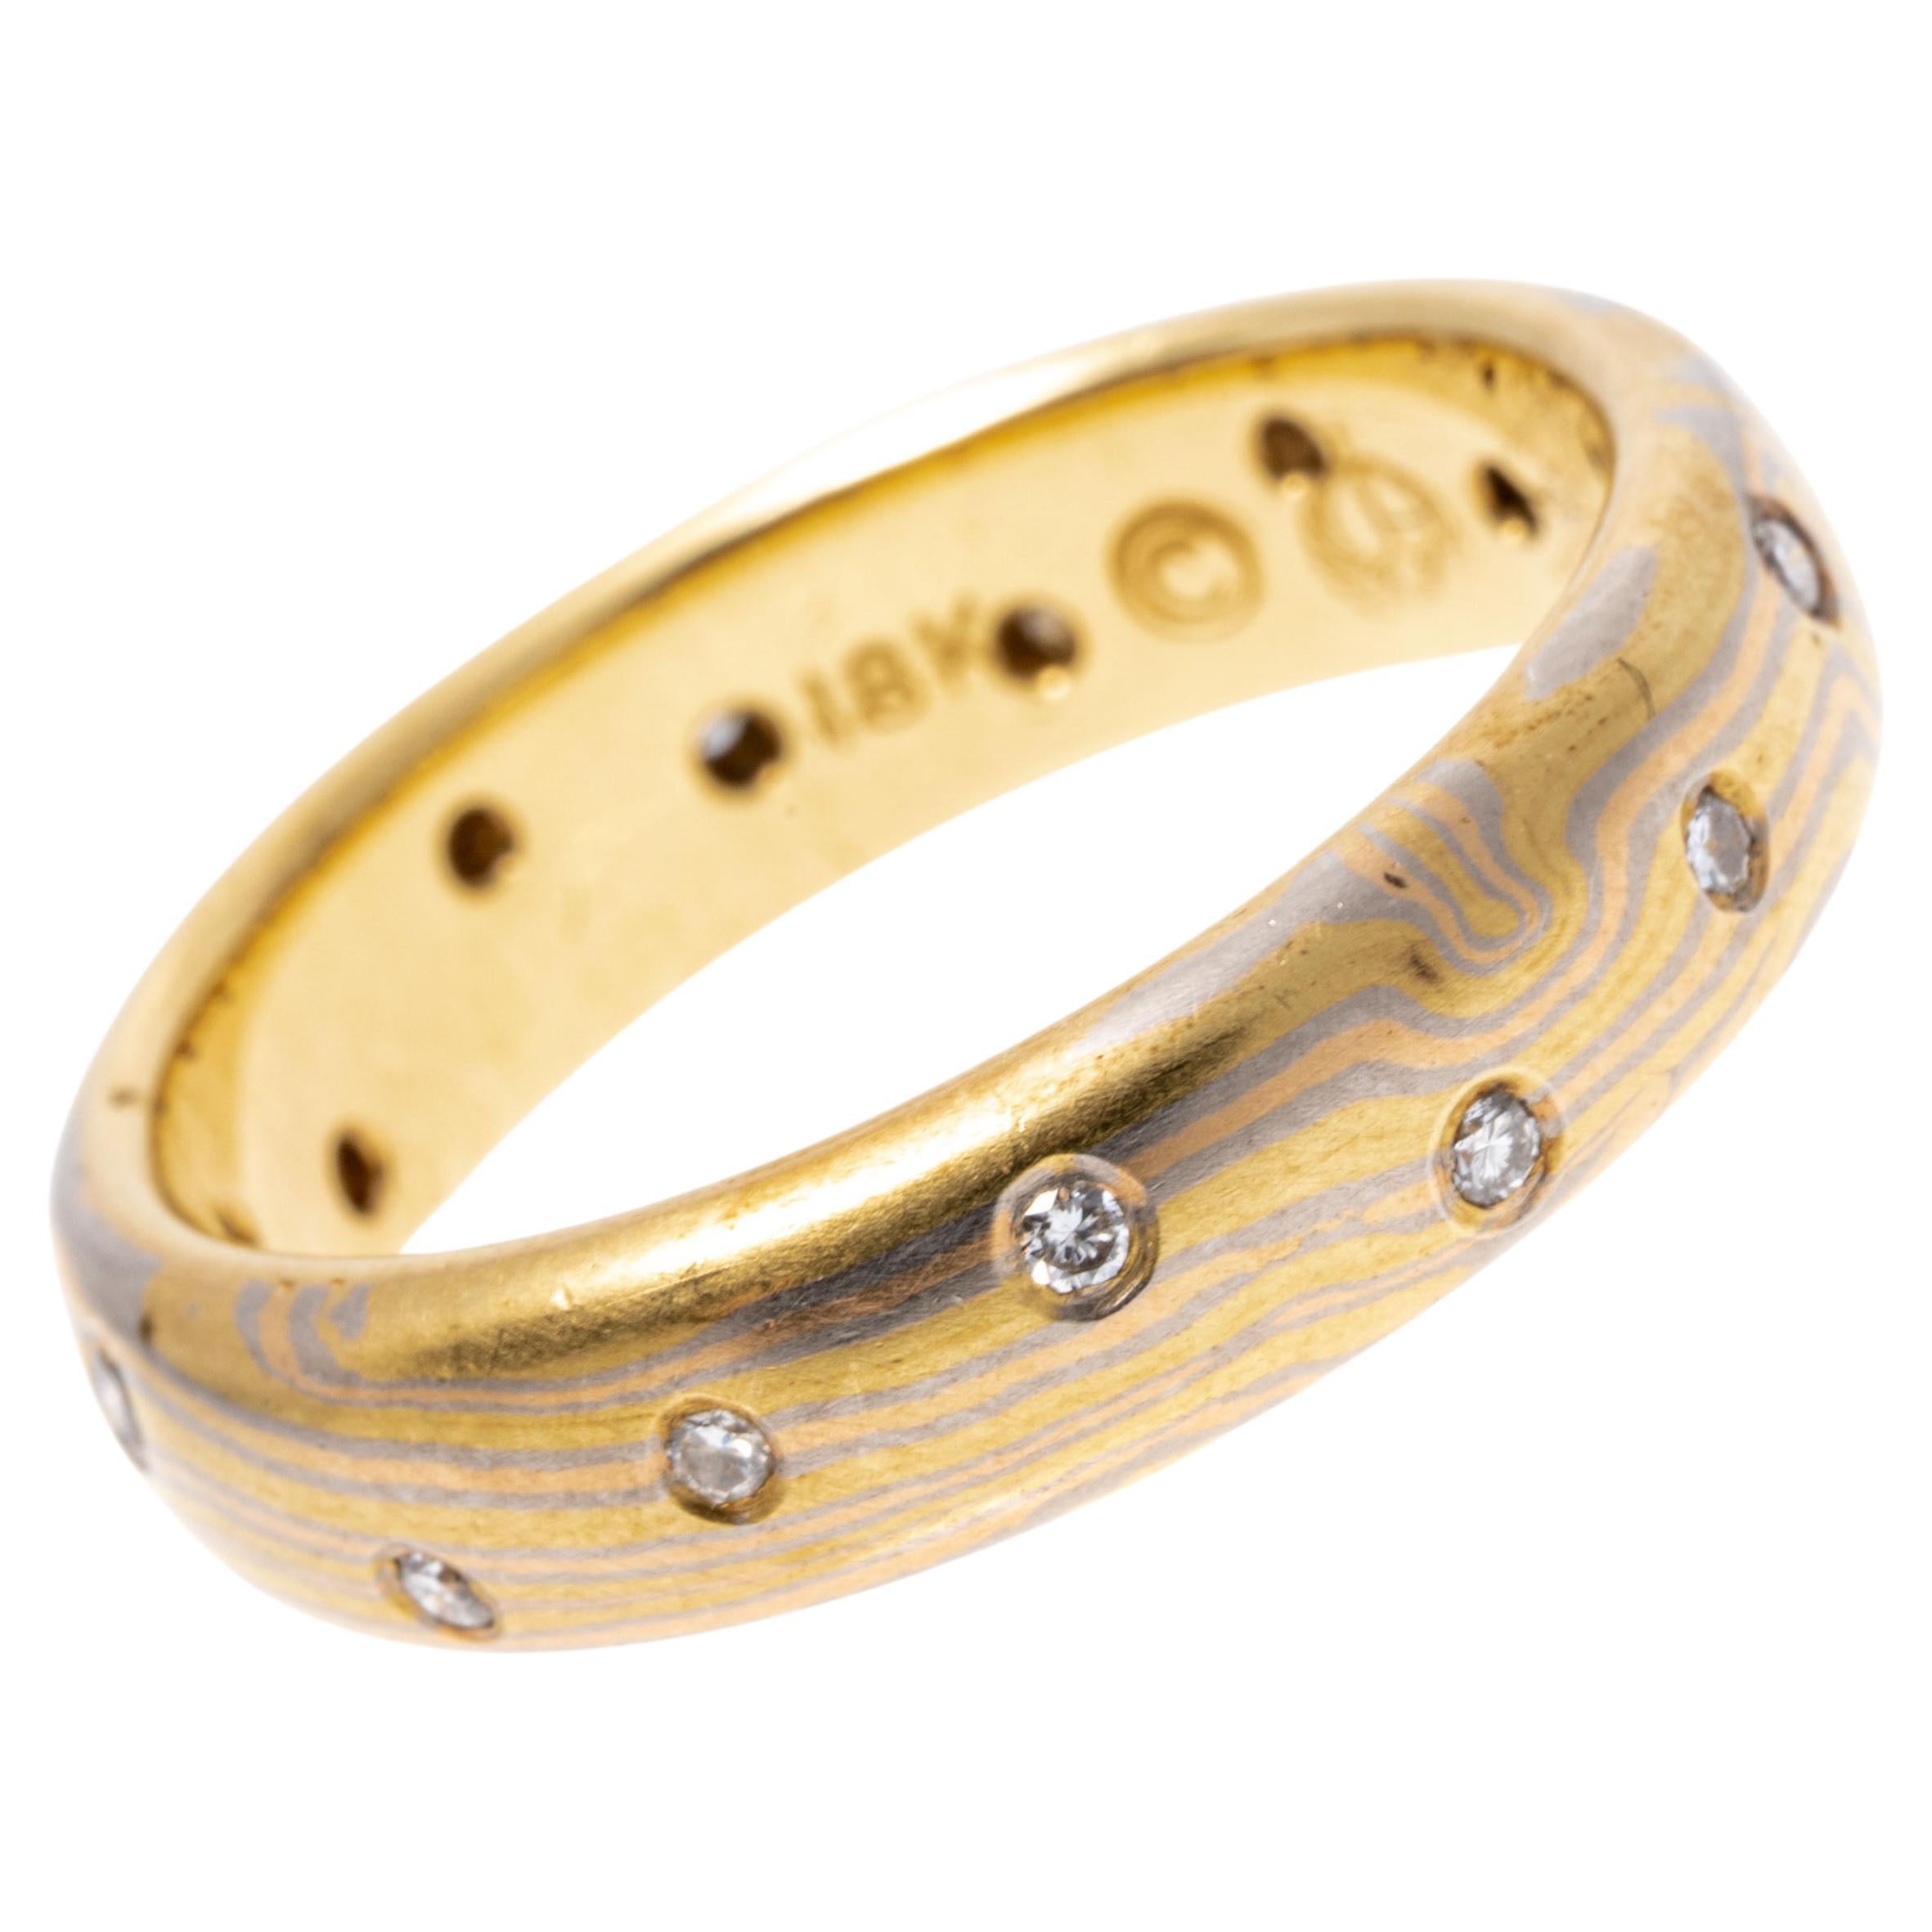 George Sawyer Signed 18k Mokume Gani Diamond Band Ring For Sale